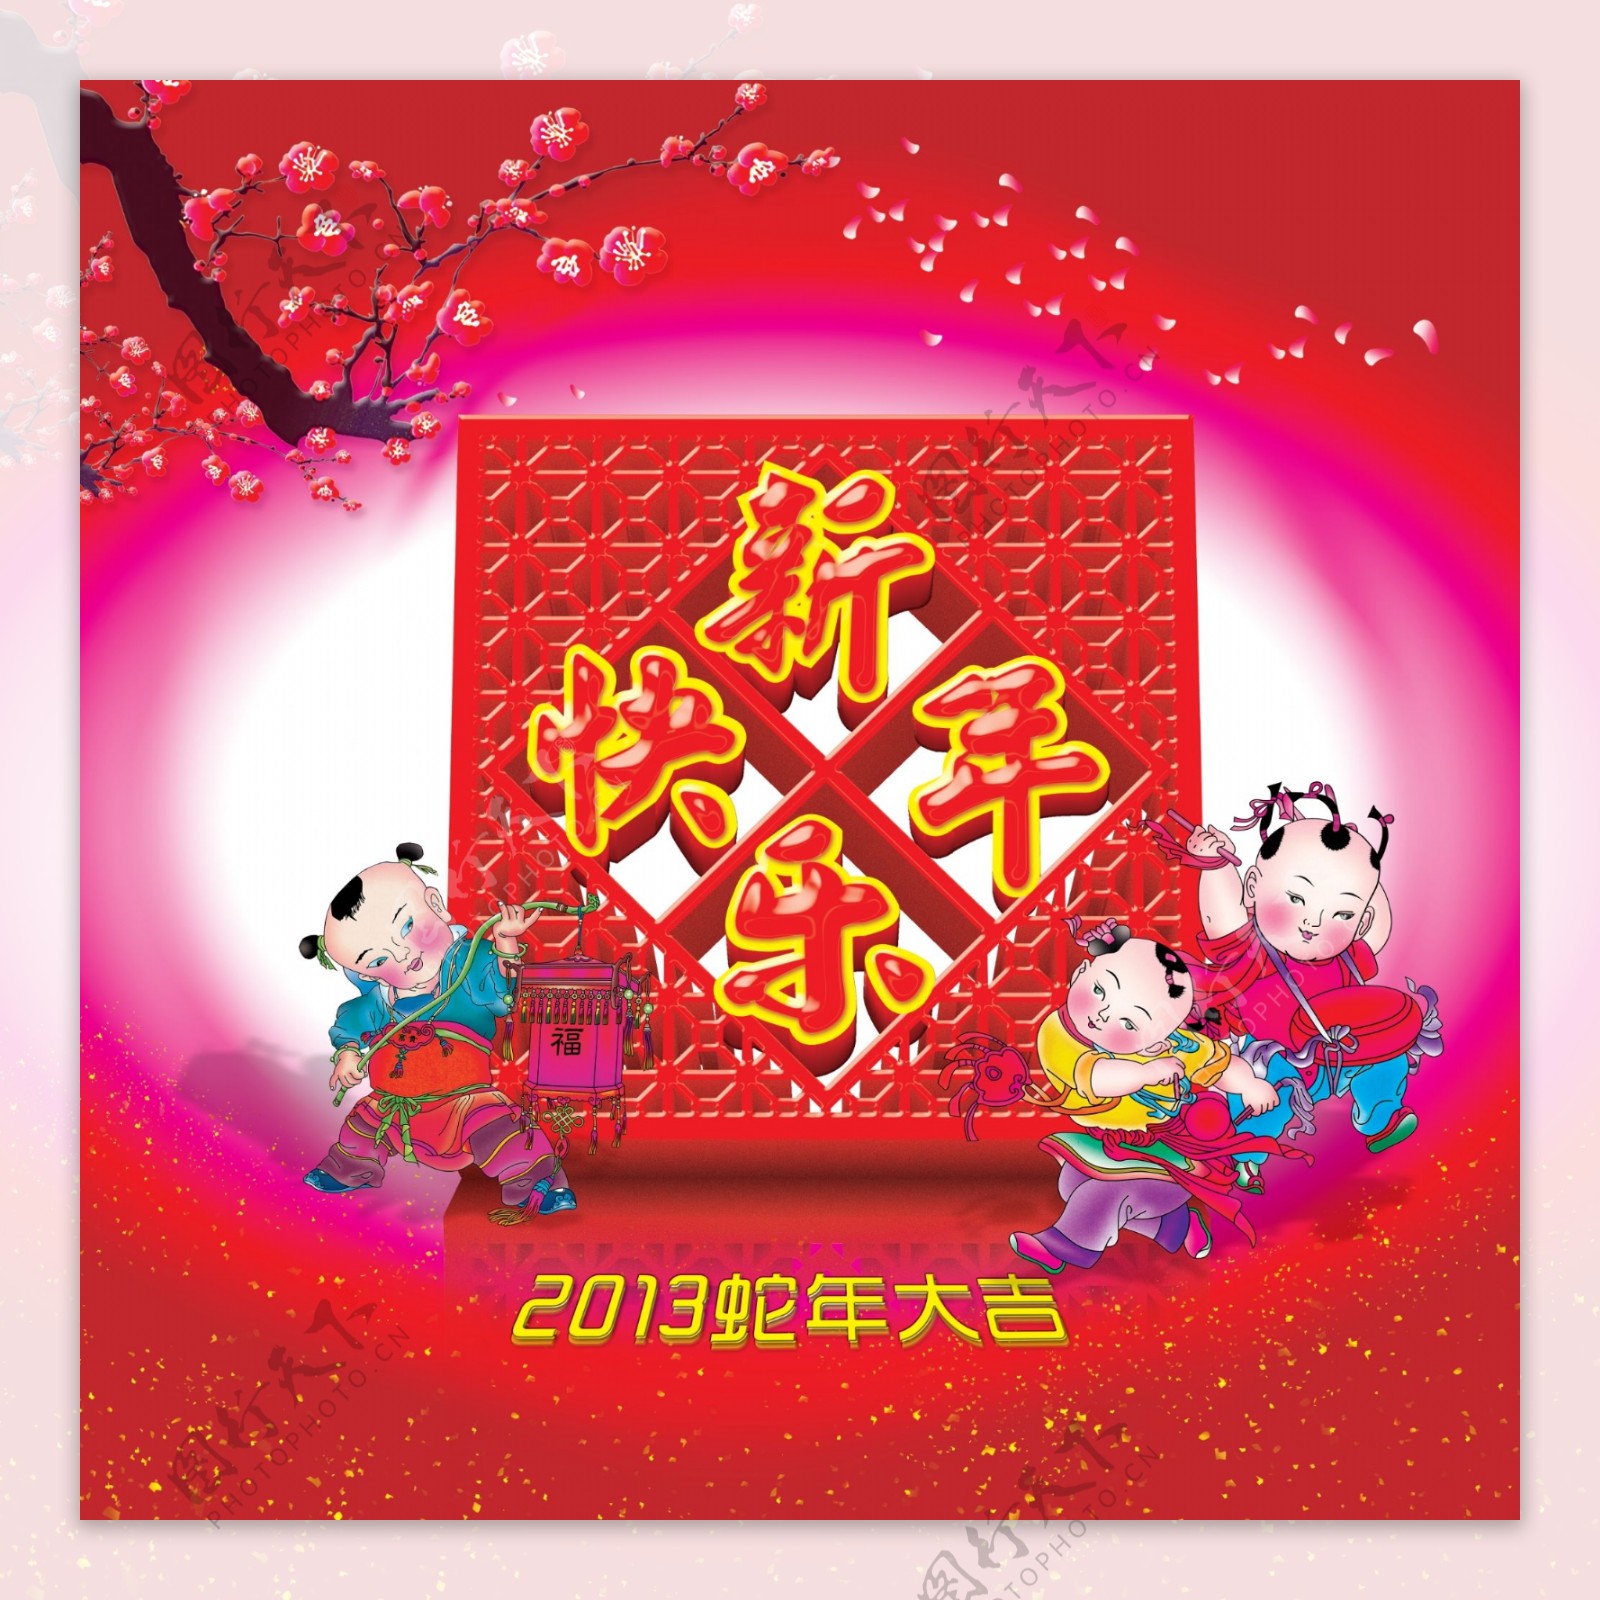 2013年新年快乐海报设计PSD素材